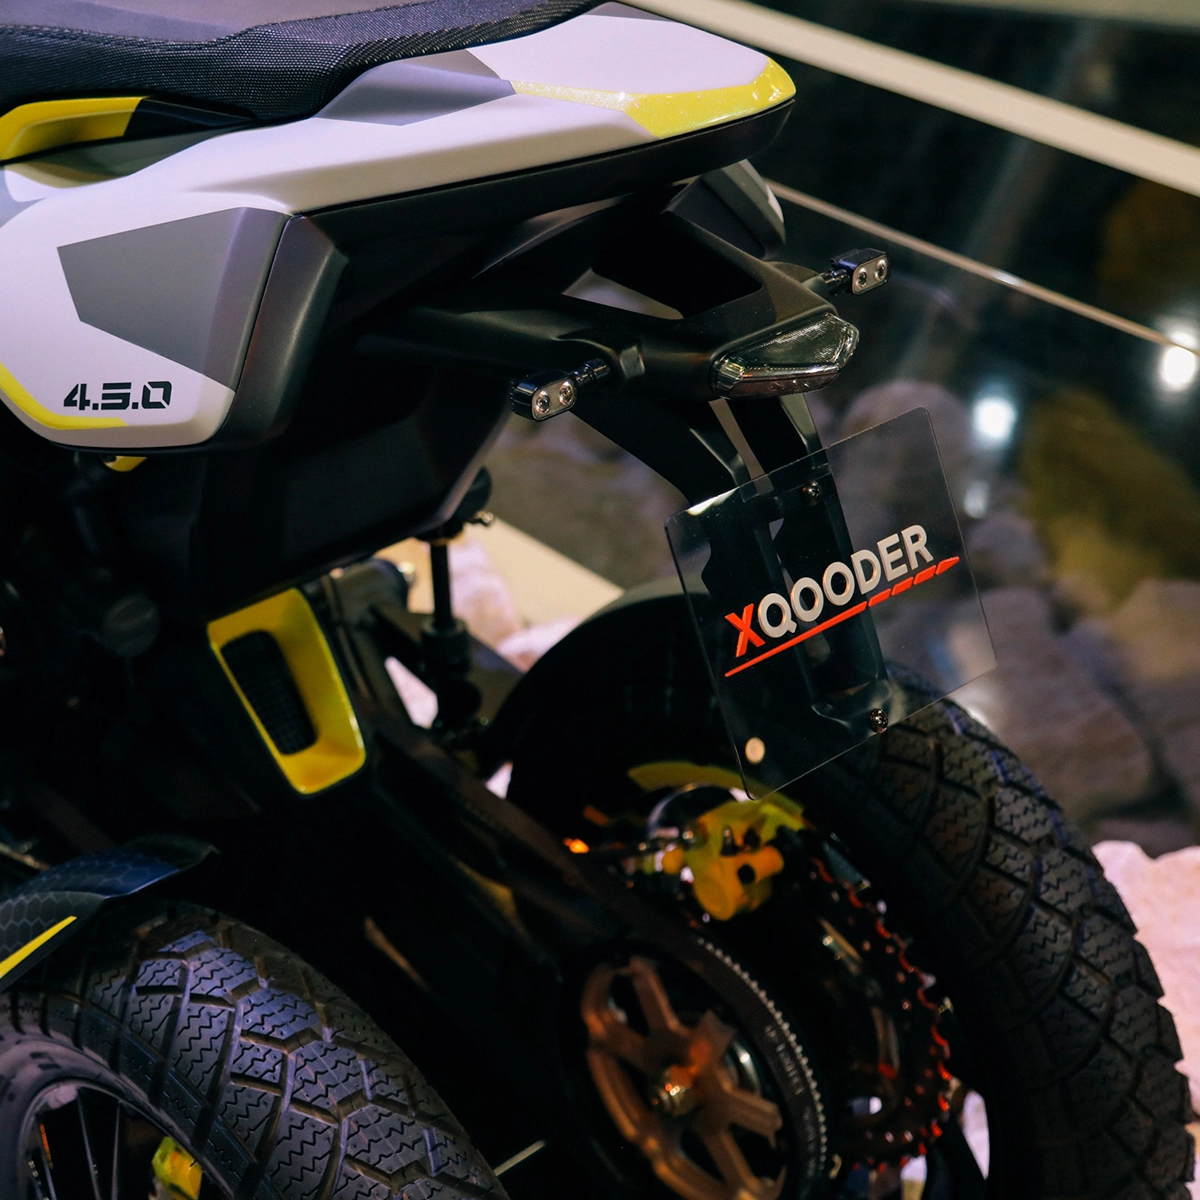 Xqooder touring - mẫu tay ga 4 bánh của thương hiệu thụy sĩ chuẩn bị ra mắt trong năm 2020 - 8